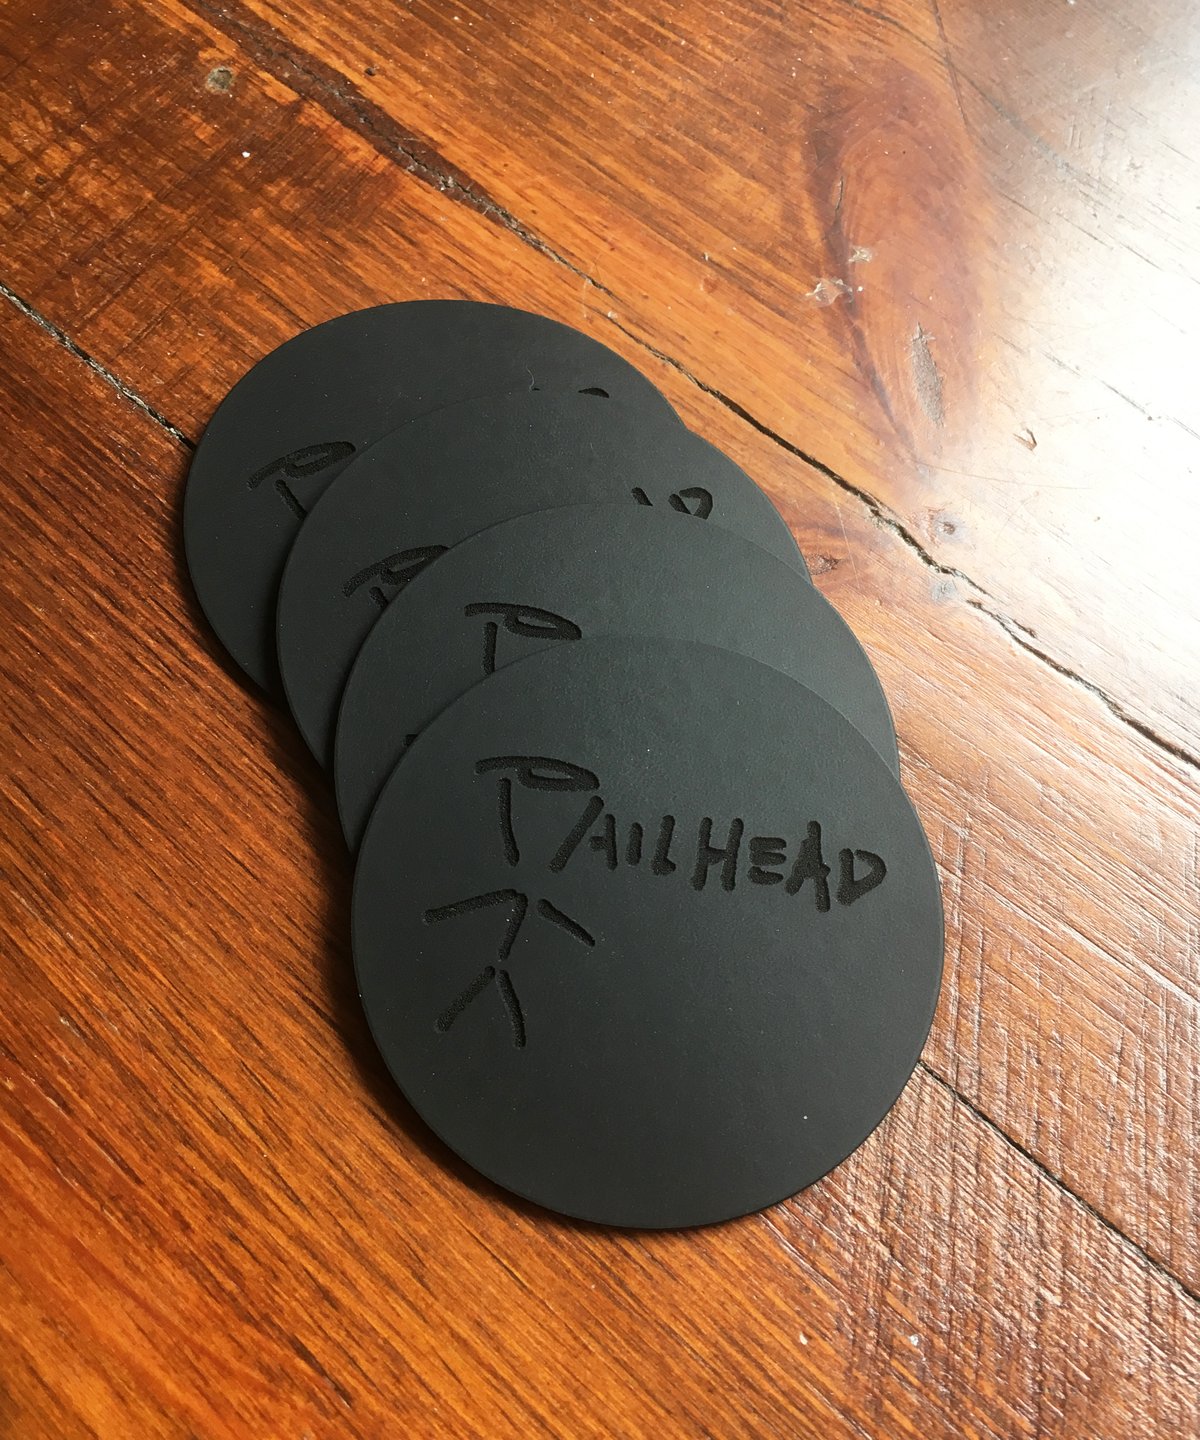 Image of Pailhead - Trait LP